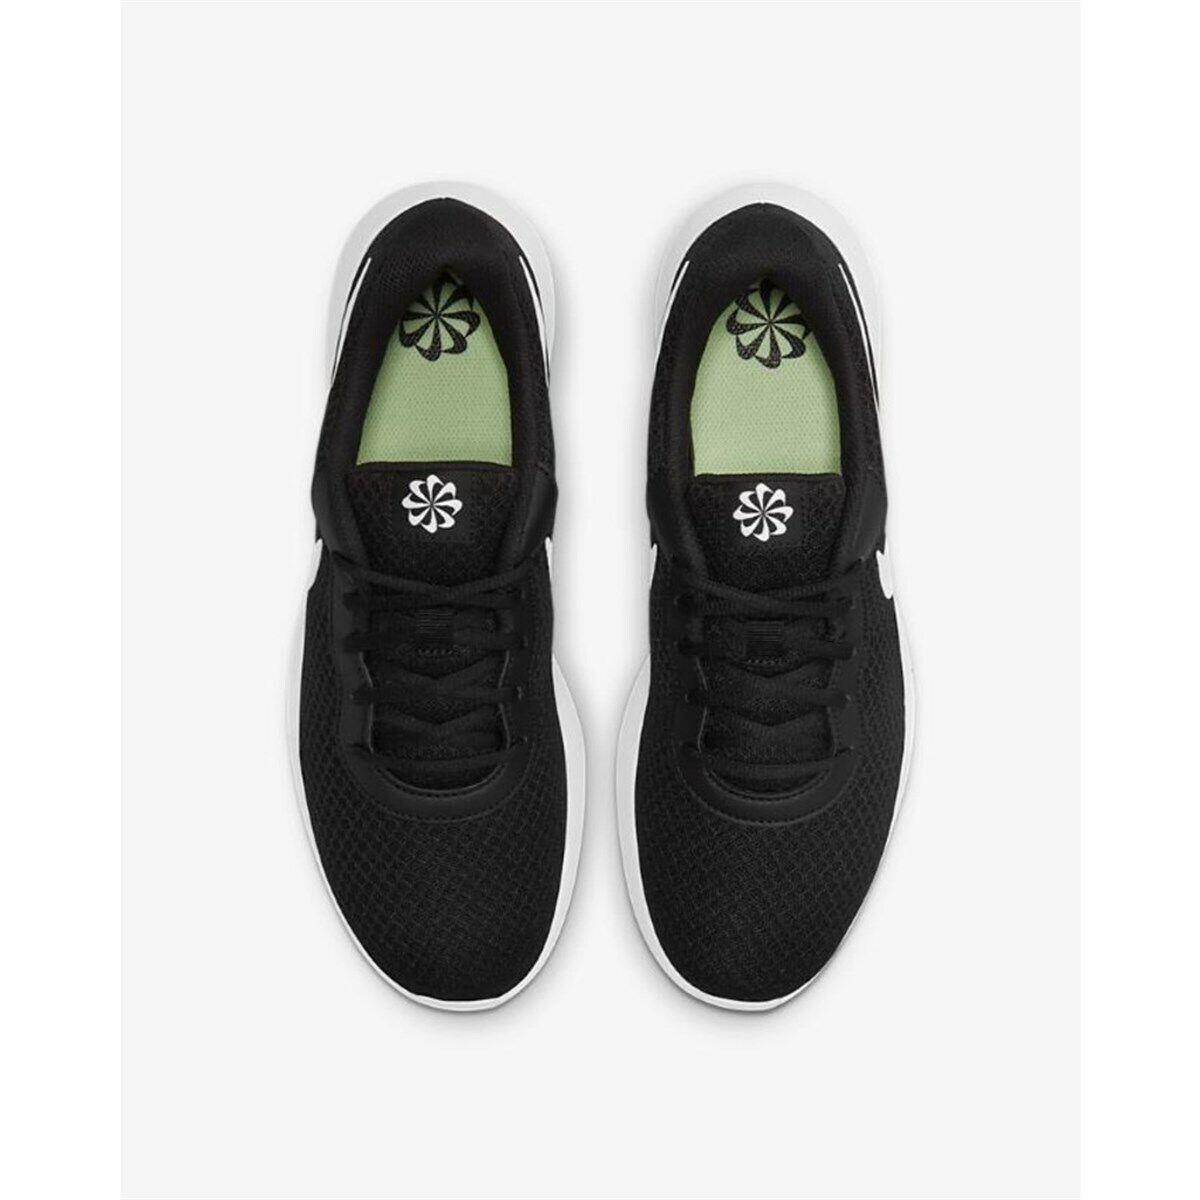 Nike shoes Tanjun - Black/White-Barely Volt-Black 1